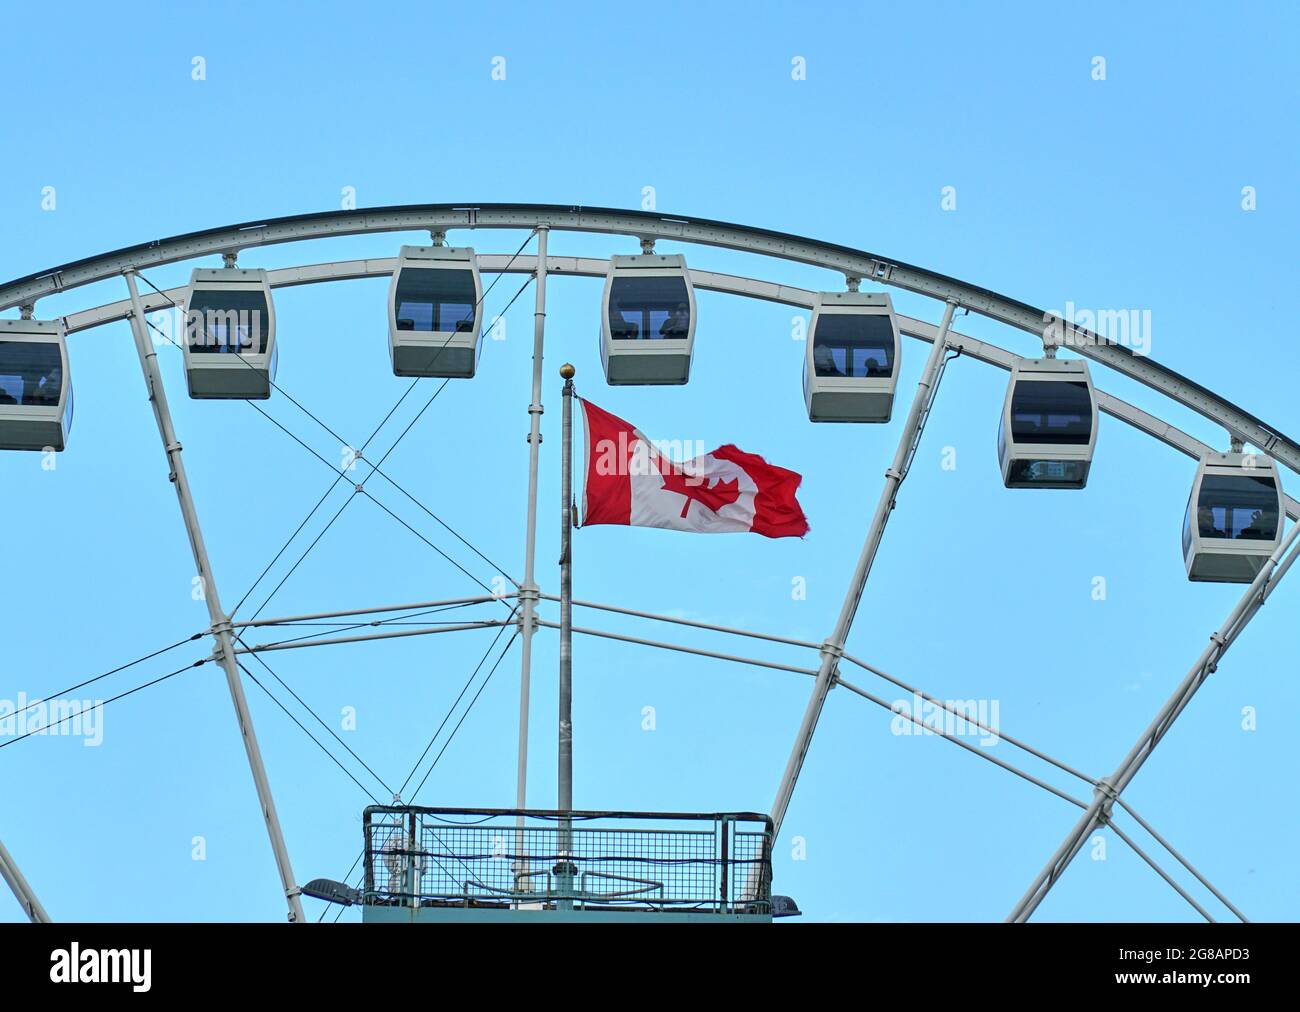 Canadá, Montreal - 11 de julio de 2021: Vista panorámica de la rueda de ferris La Grande Roue de Montreal en el Puerto Viejo de Montreal sobre cielos azules y nubes. La antigua P Foto de stock